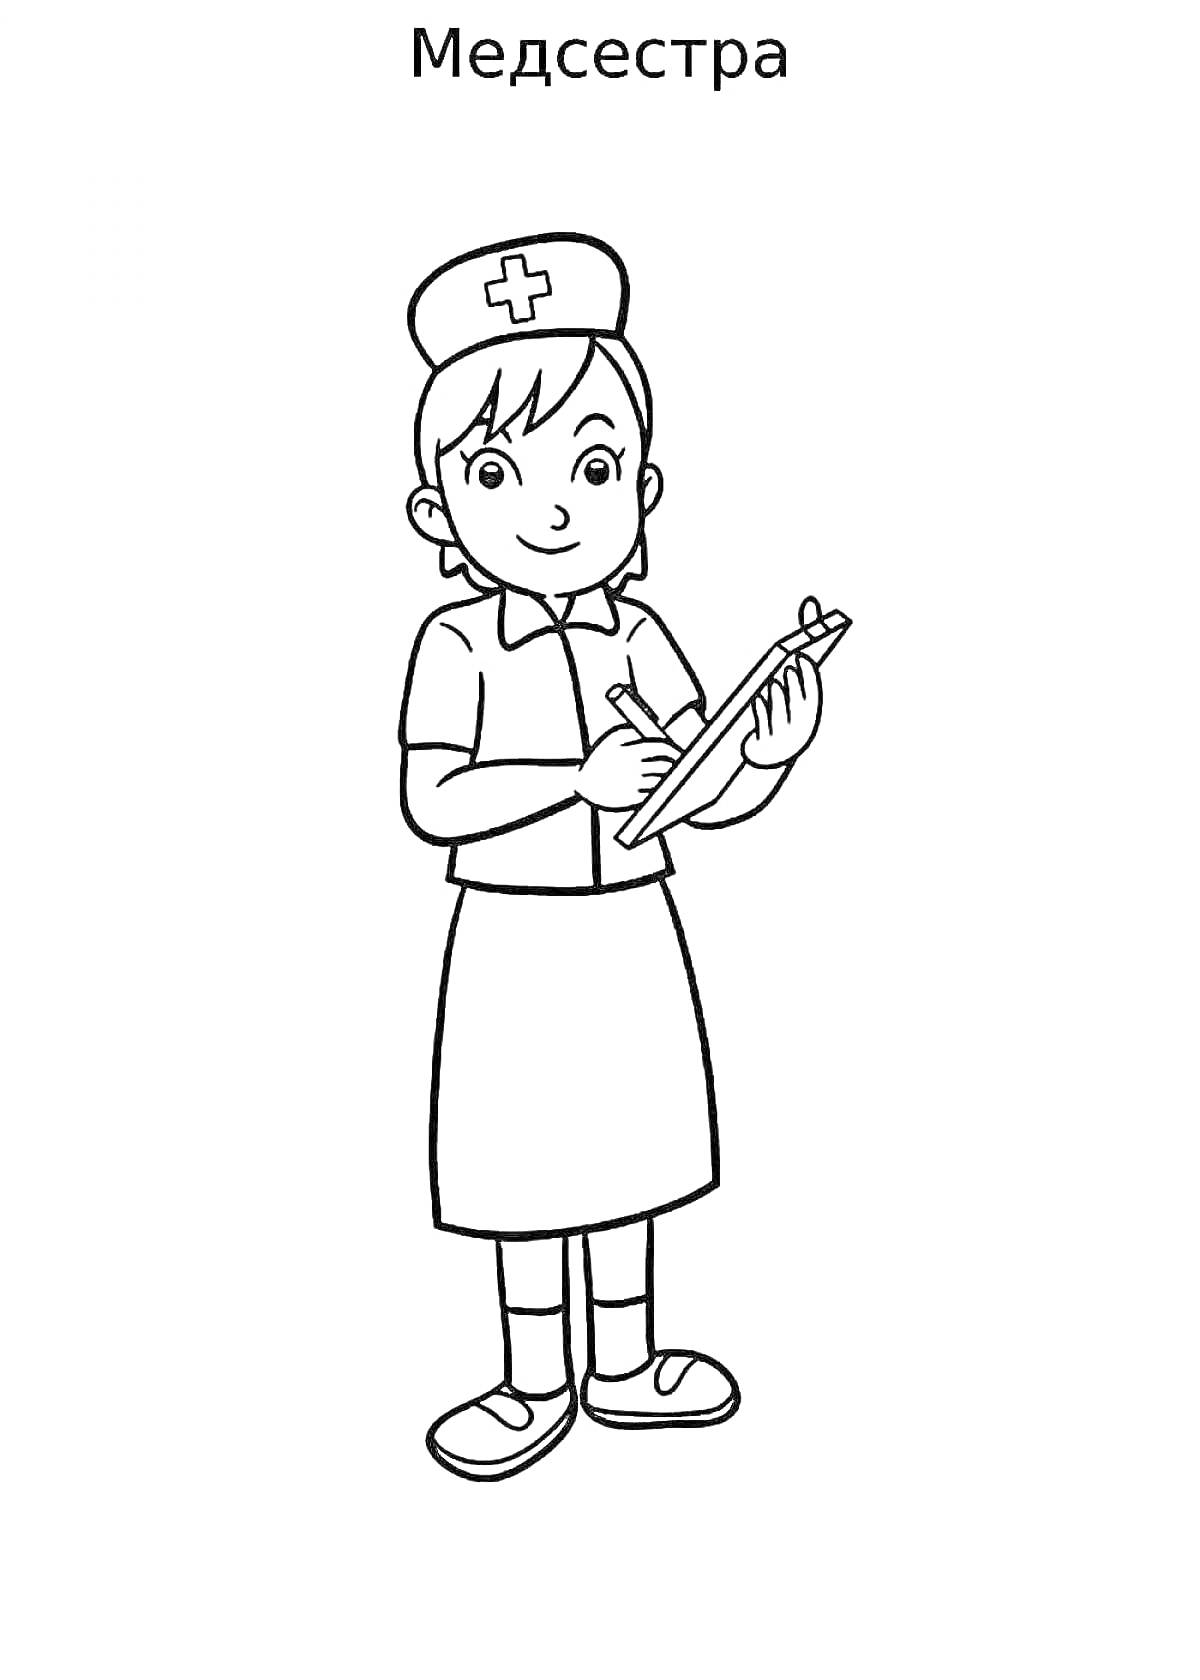 Медсестра с блокнотом, в медицинской форме и шапочке с крестом, стоящая